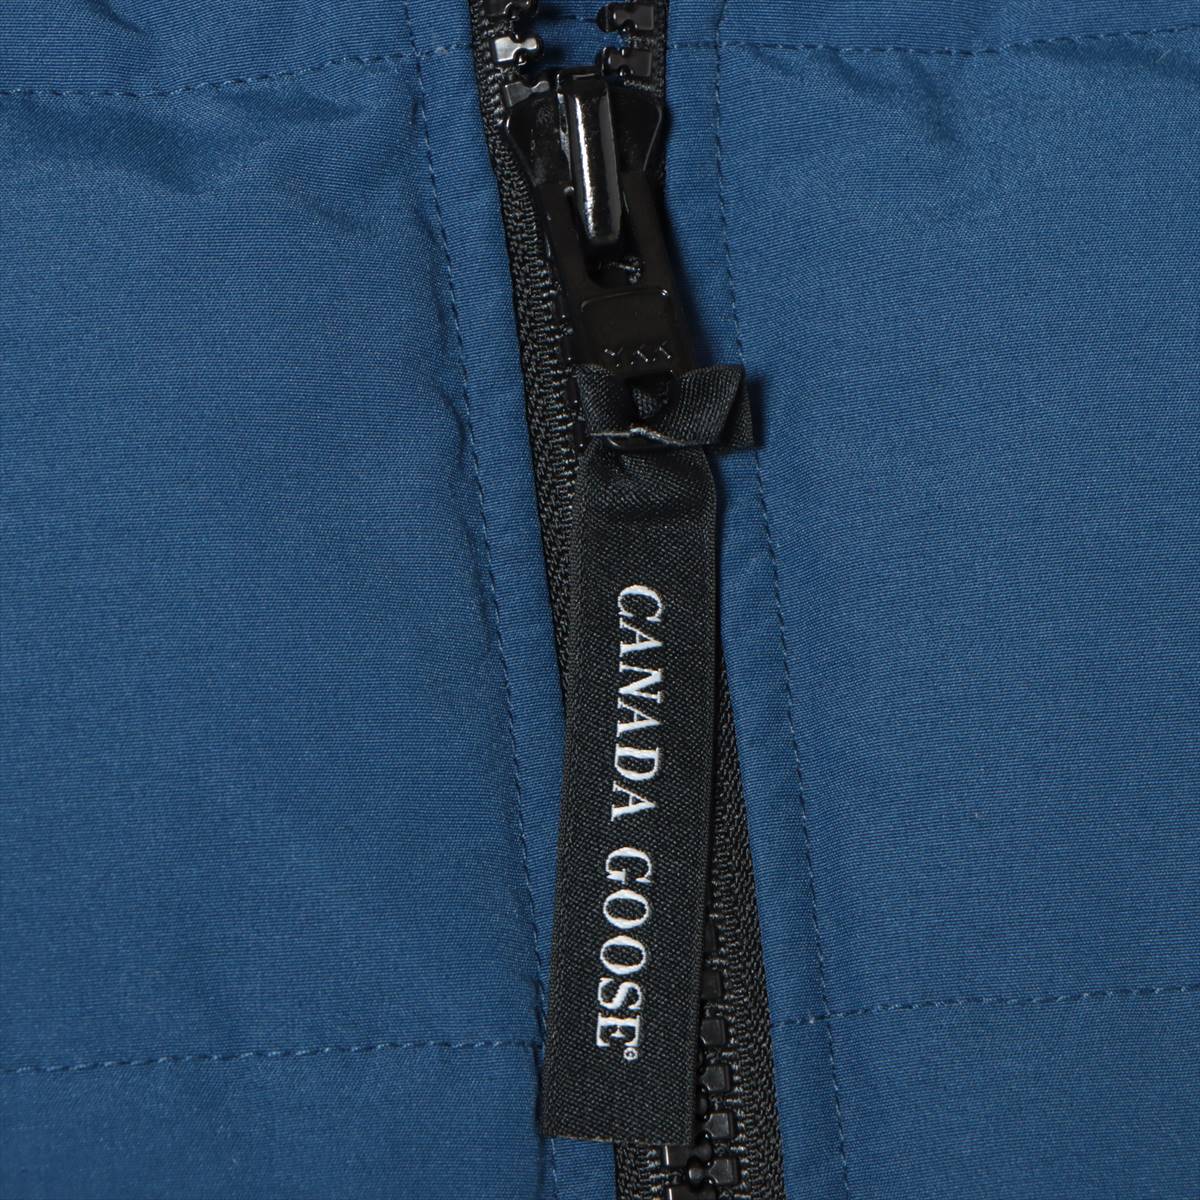 カナダグース WOOLFORD コットン×ポリエステル ダウンジャケット FUSION L メンズ ブルー  サザビー 3807MA